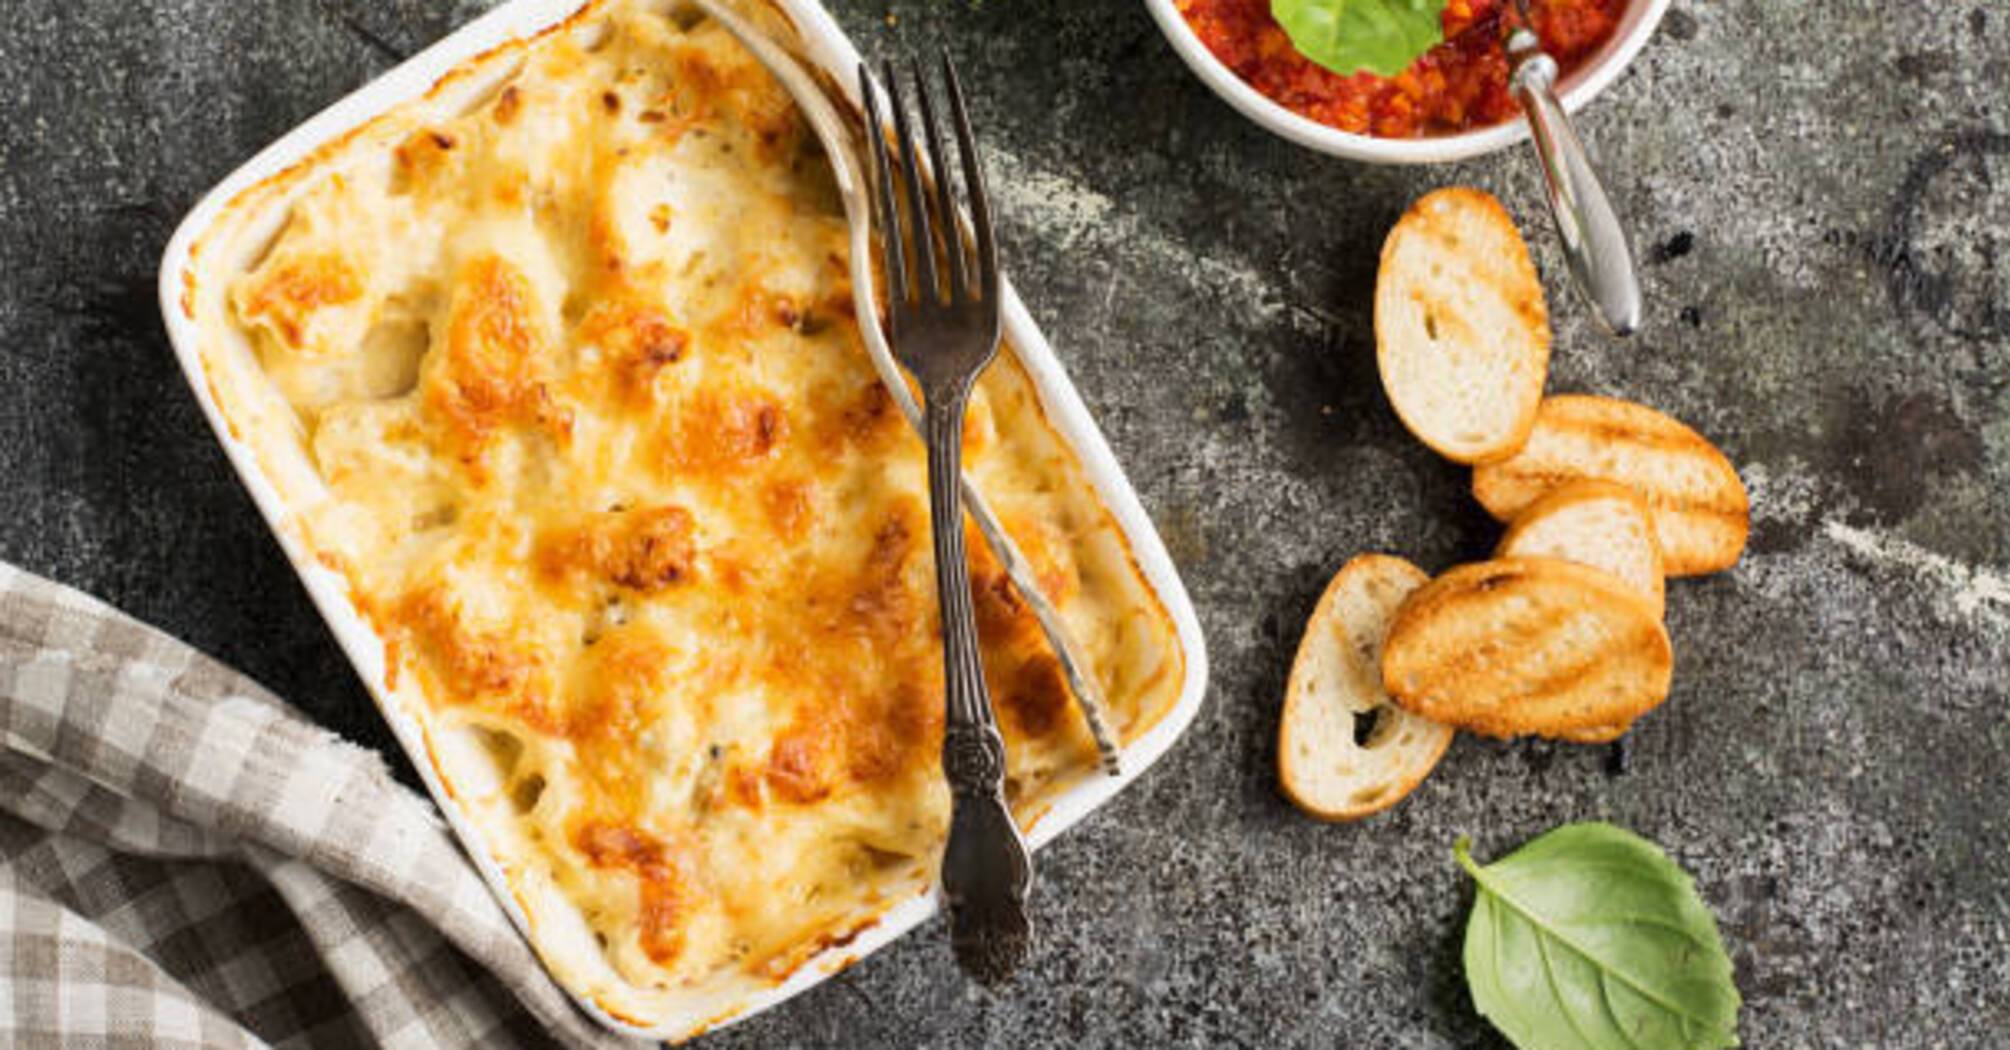 Zucchini casserole a la lasagna: how to quickly prepare a hearty dinner